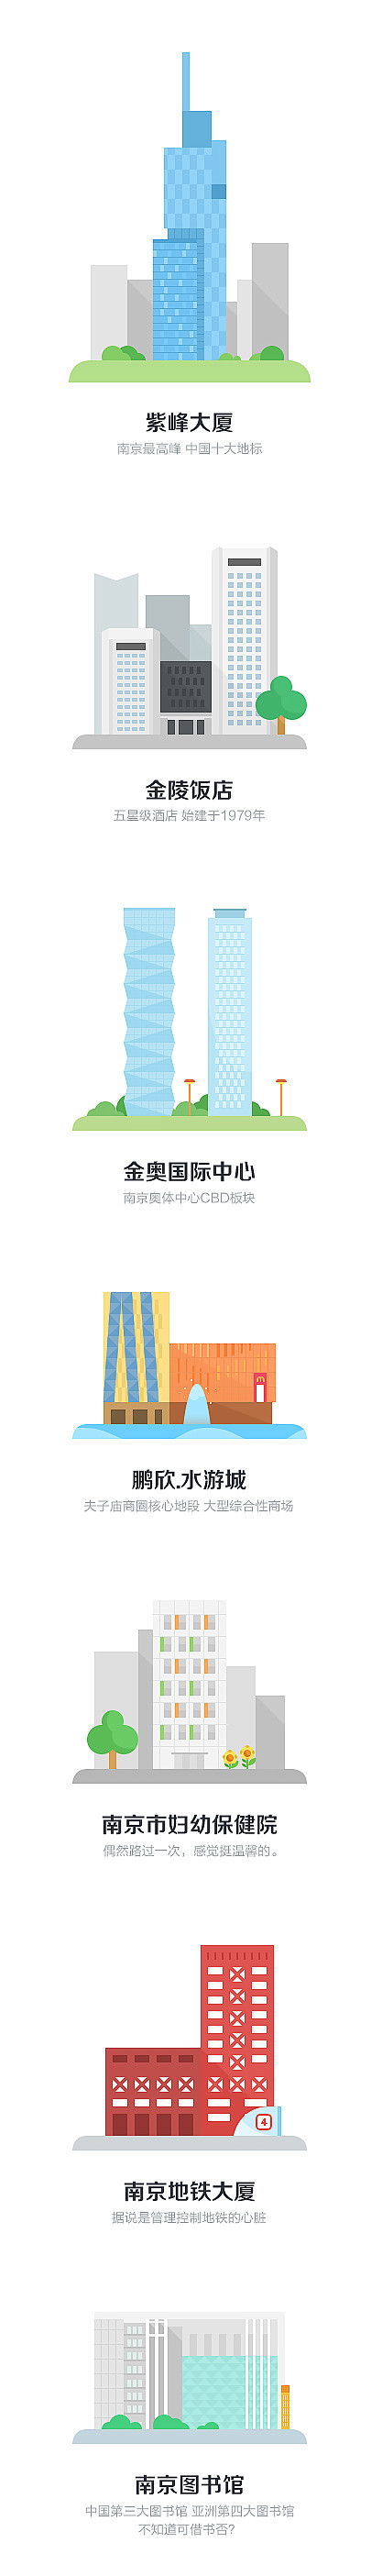 南京 - 城市优美建筑鉴赏系列